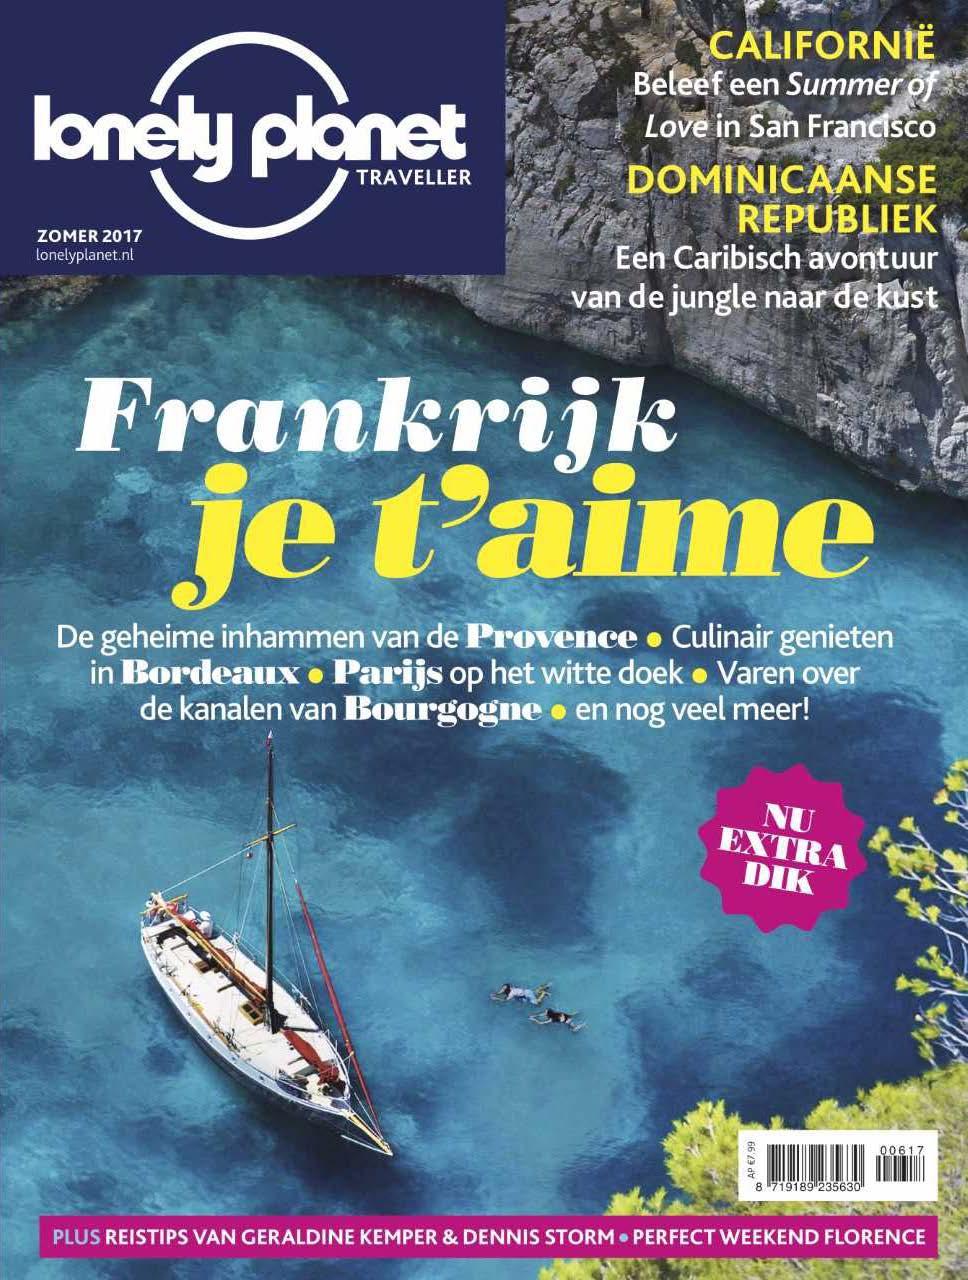 Lonely Planet Traveller In Nederland en België wordt door uitgeverij Pijper Media sinds 2016 het maandelijkse reismagazine Lonely Planet Traveller gepubliceerd.